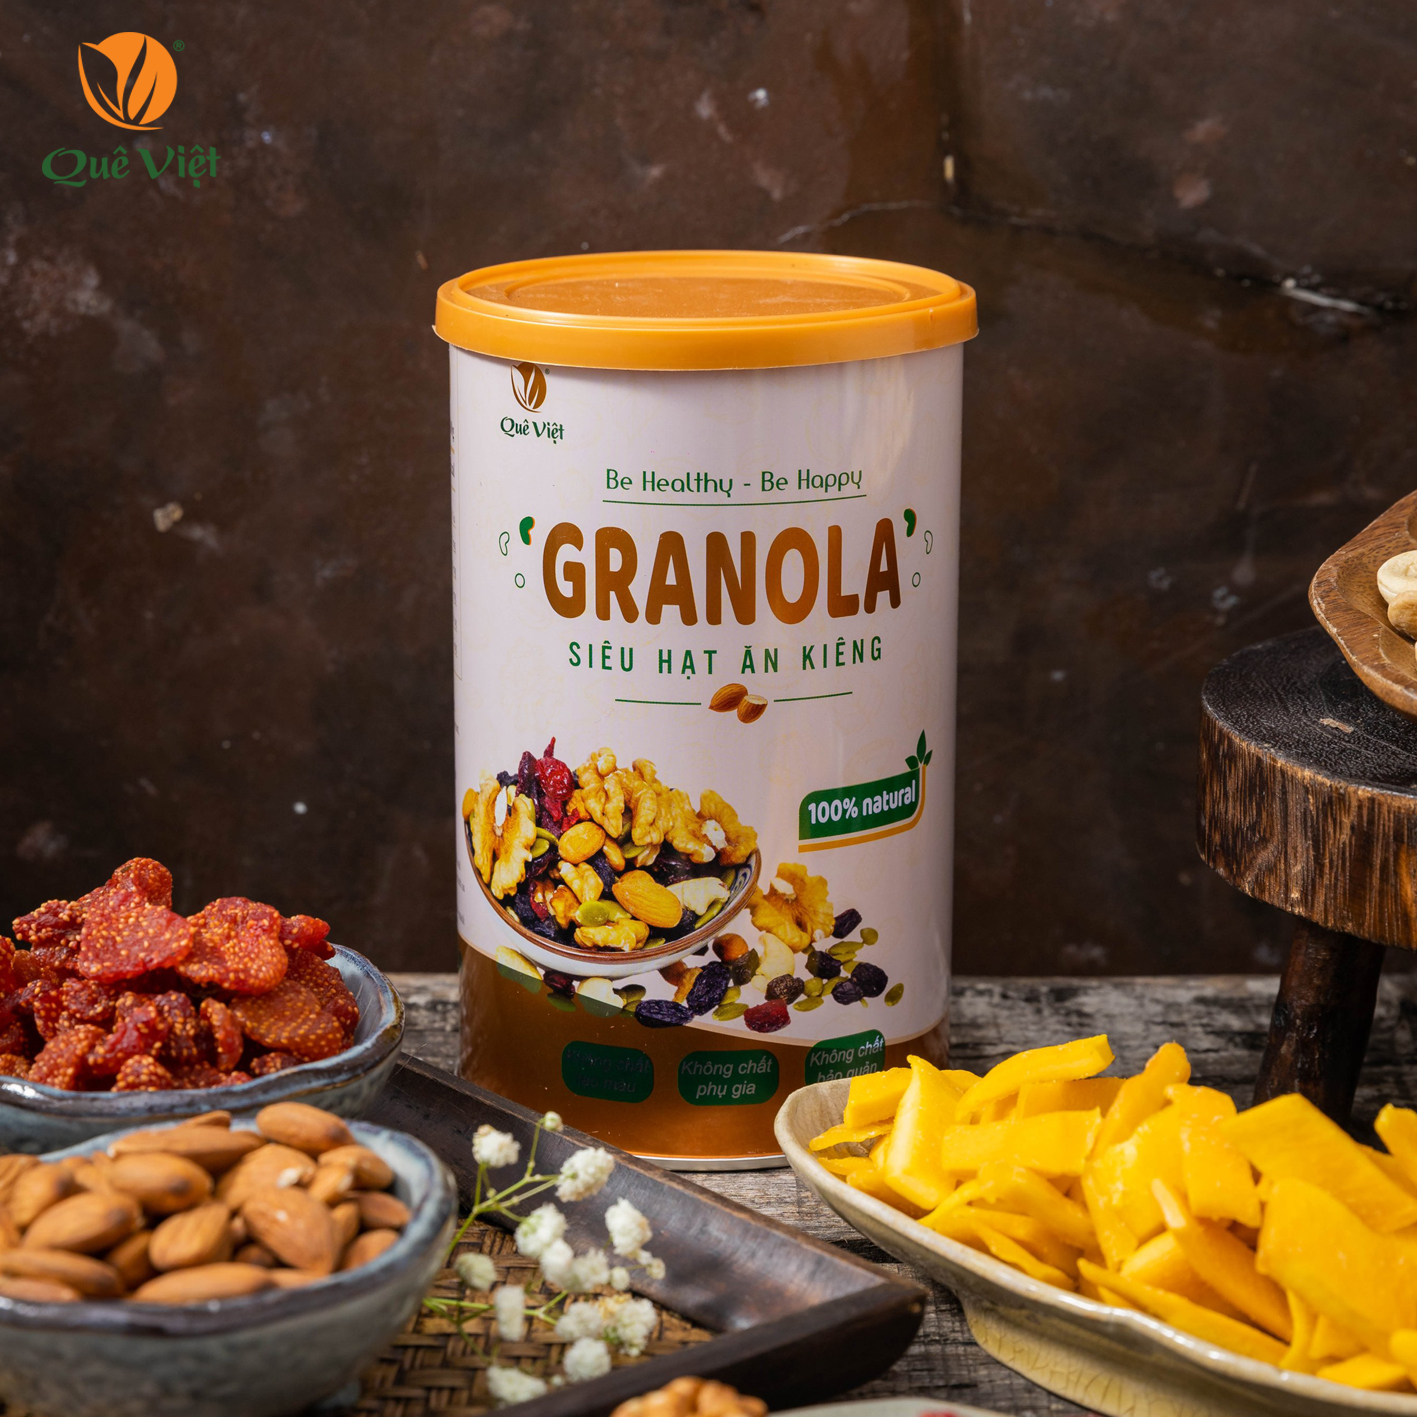 Combo 2 hộp Granola ngũ cốc siêu hạt Quê Việt + tặng 1 cốc gốm sứ bát tràng (500g/hộp)